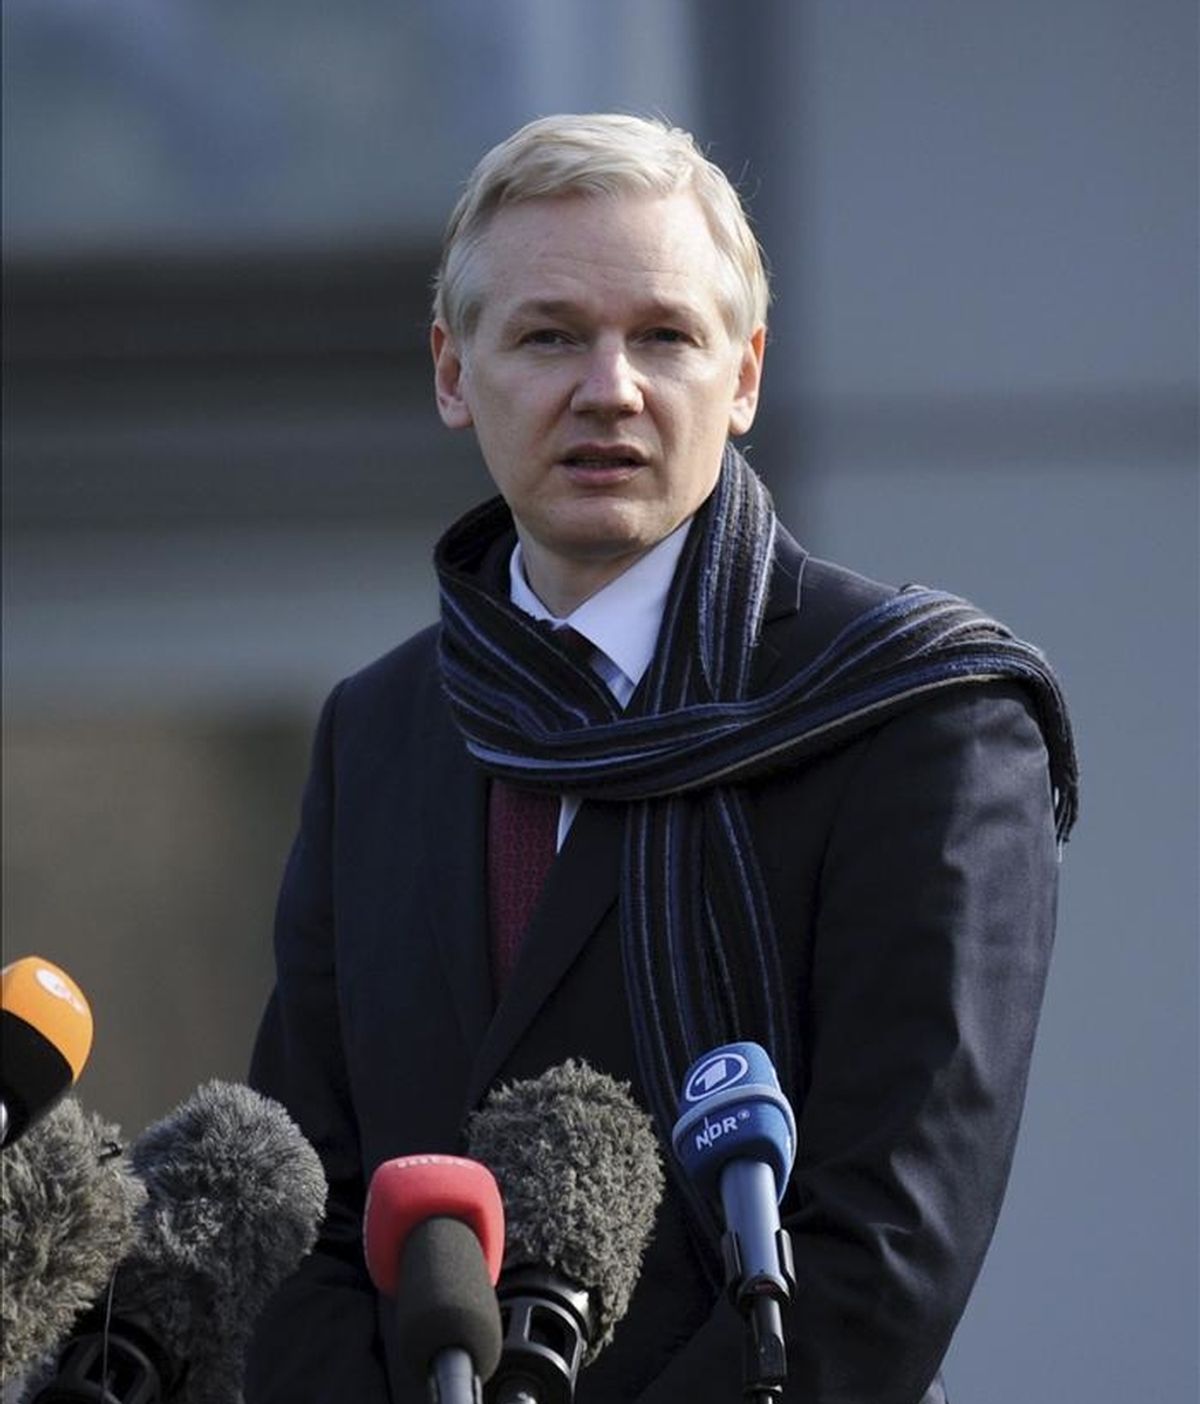 El fundador de Wikileaks, Julian Assange, comparece ante los medios en las afueras del tribunal londinense de Belmarsh, al sureste de Londres, Reino Unido, hoy, jueves 24 de febrero de 2011. EFE